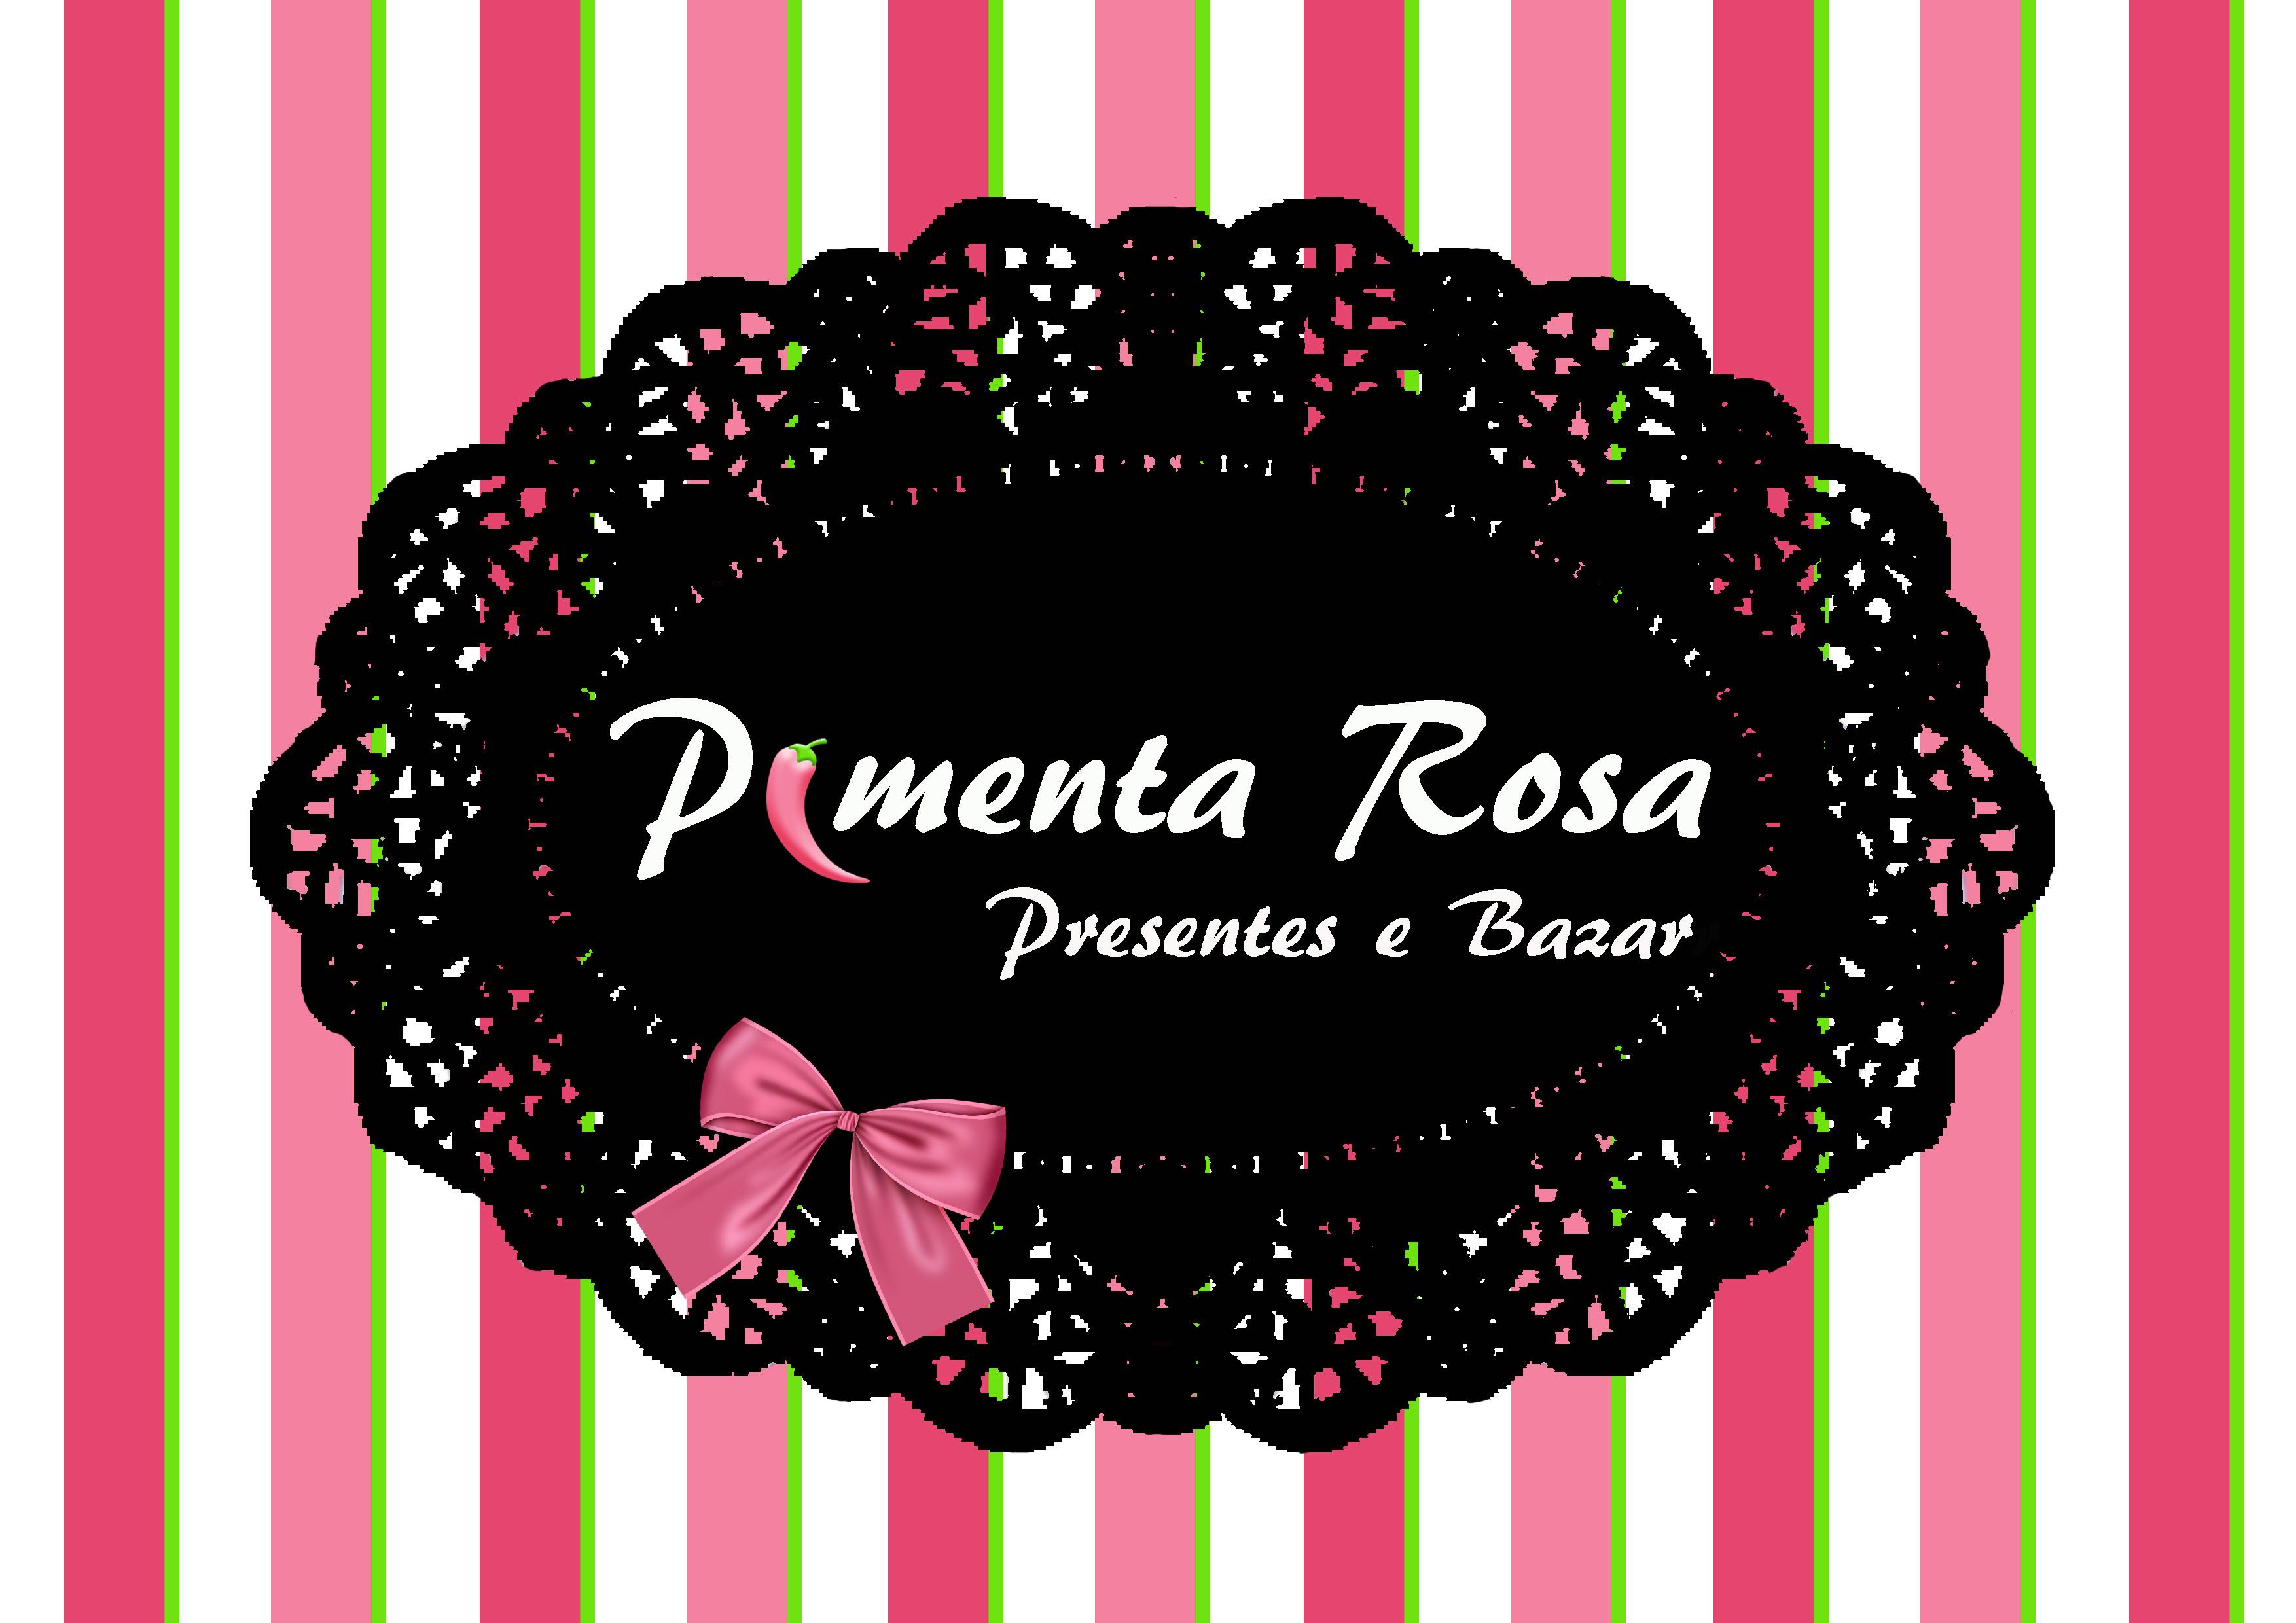 Pimenta Rosa Presentes e Bazar logo